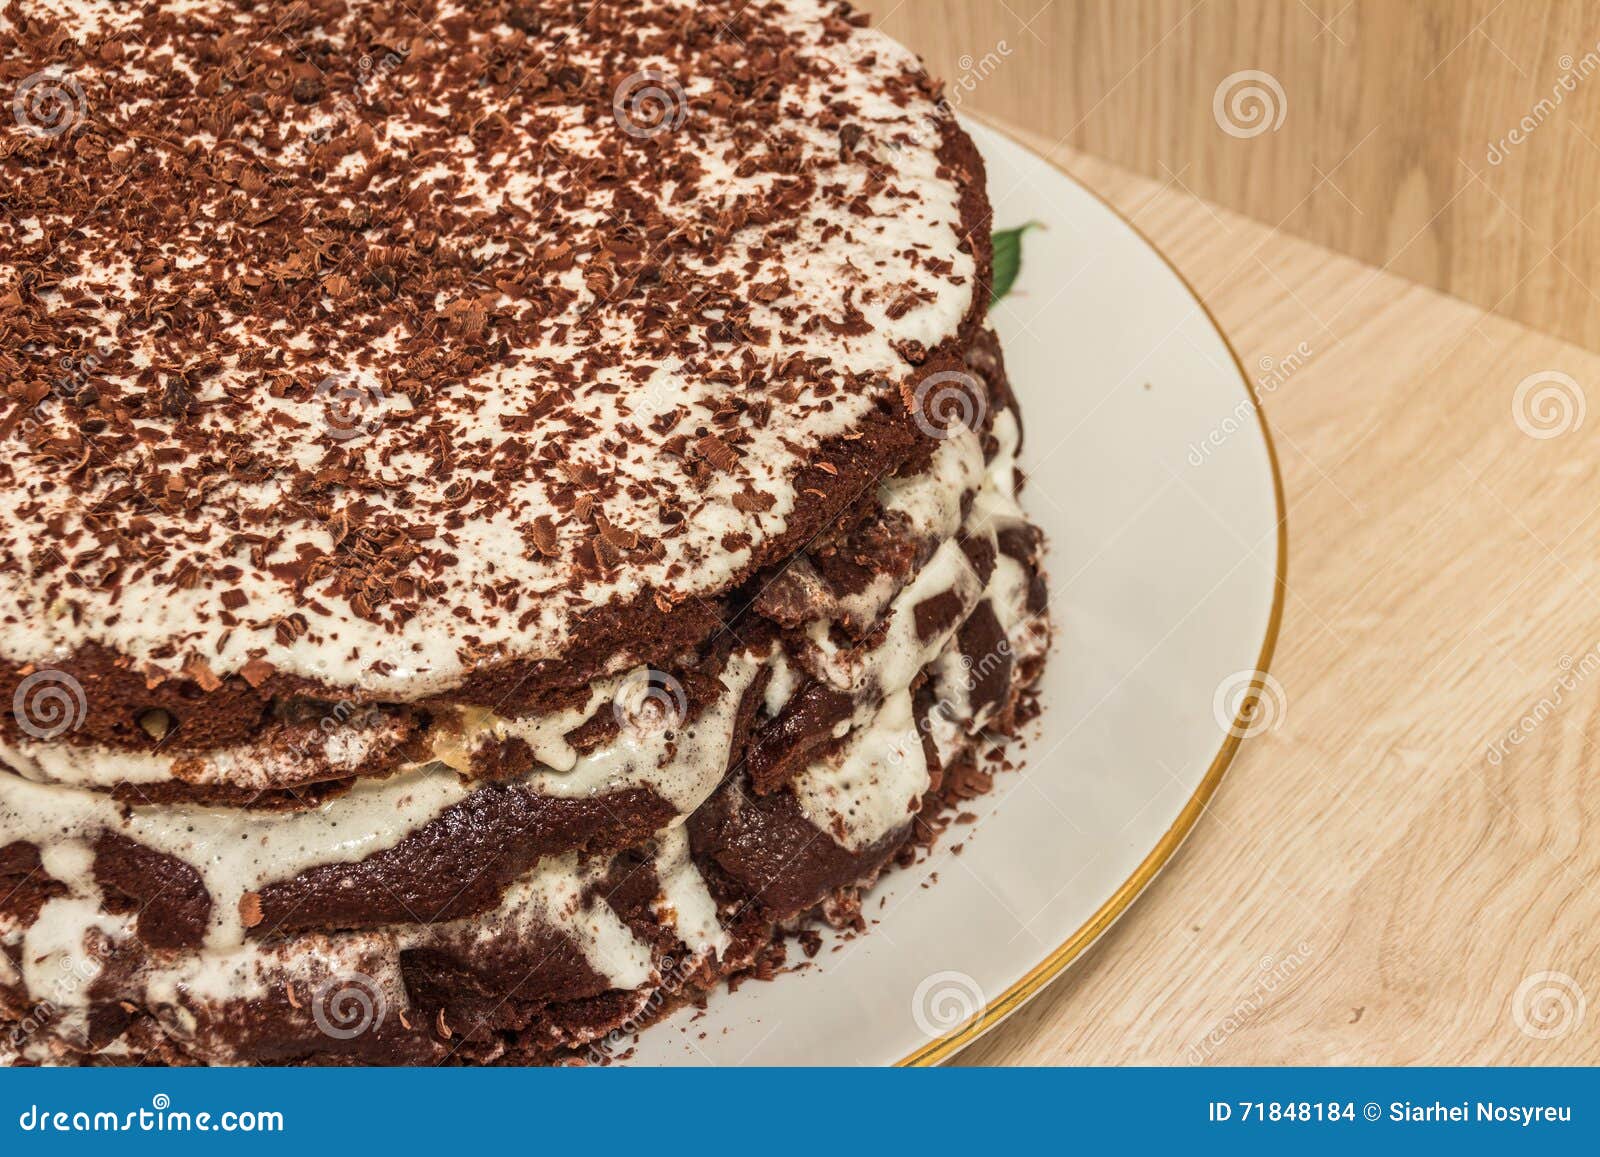 ÃÂ¡hocolate cake is soaked in sour cream and decorated with chocolate shavings